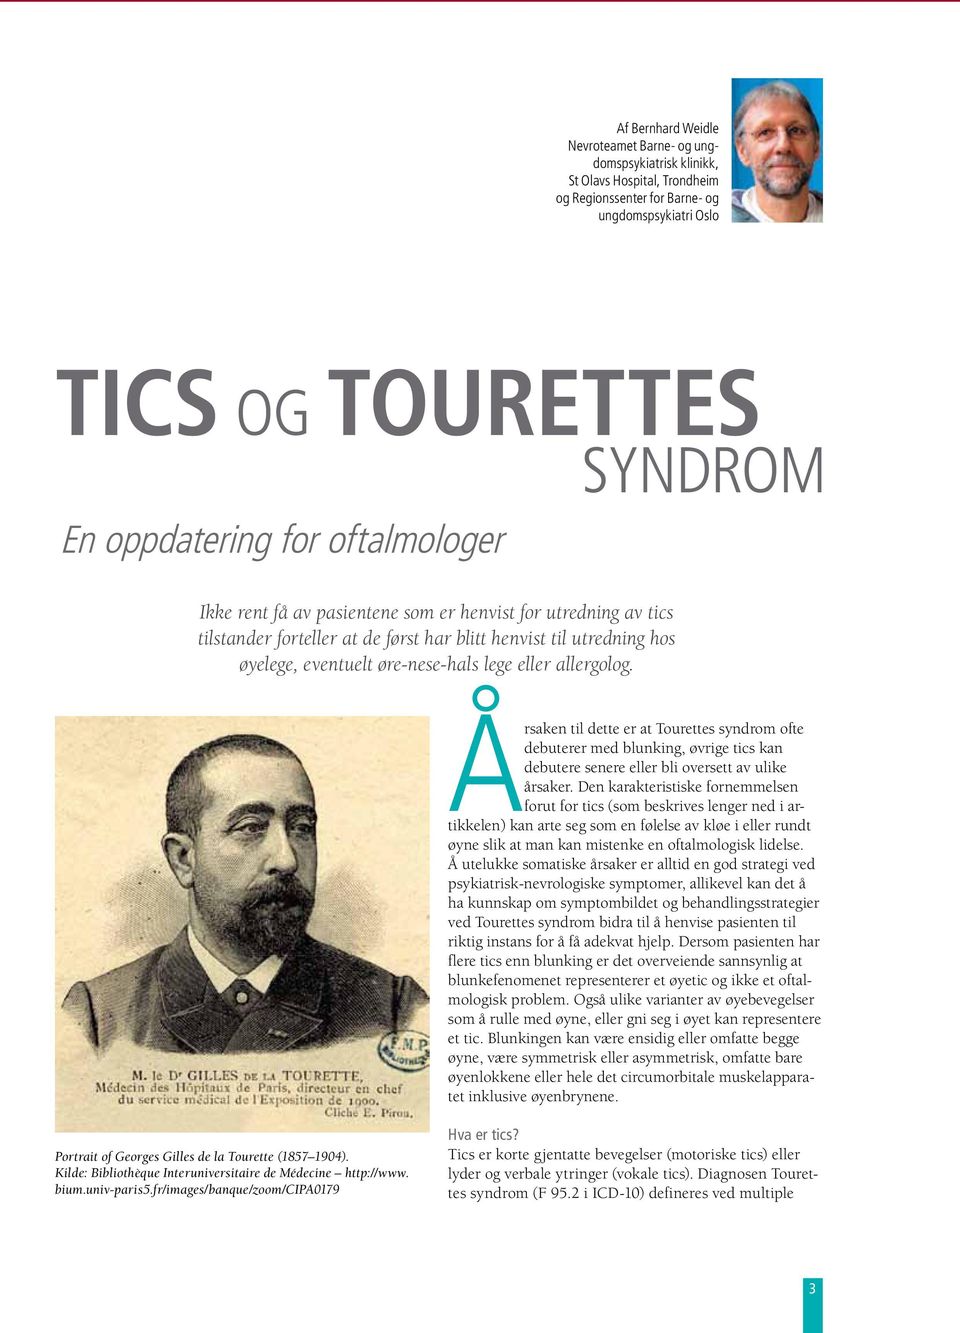 allergolog. Årsaken til dette er at Tourettes syndrom ofte debuterer med blunking, øvrige tics kan debutere senere eller bli oversett av ulike årsaker.